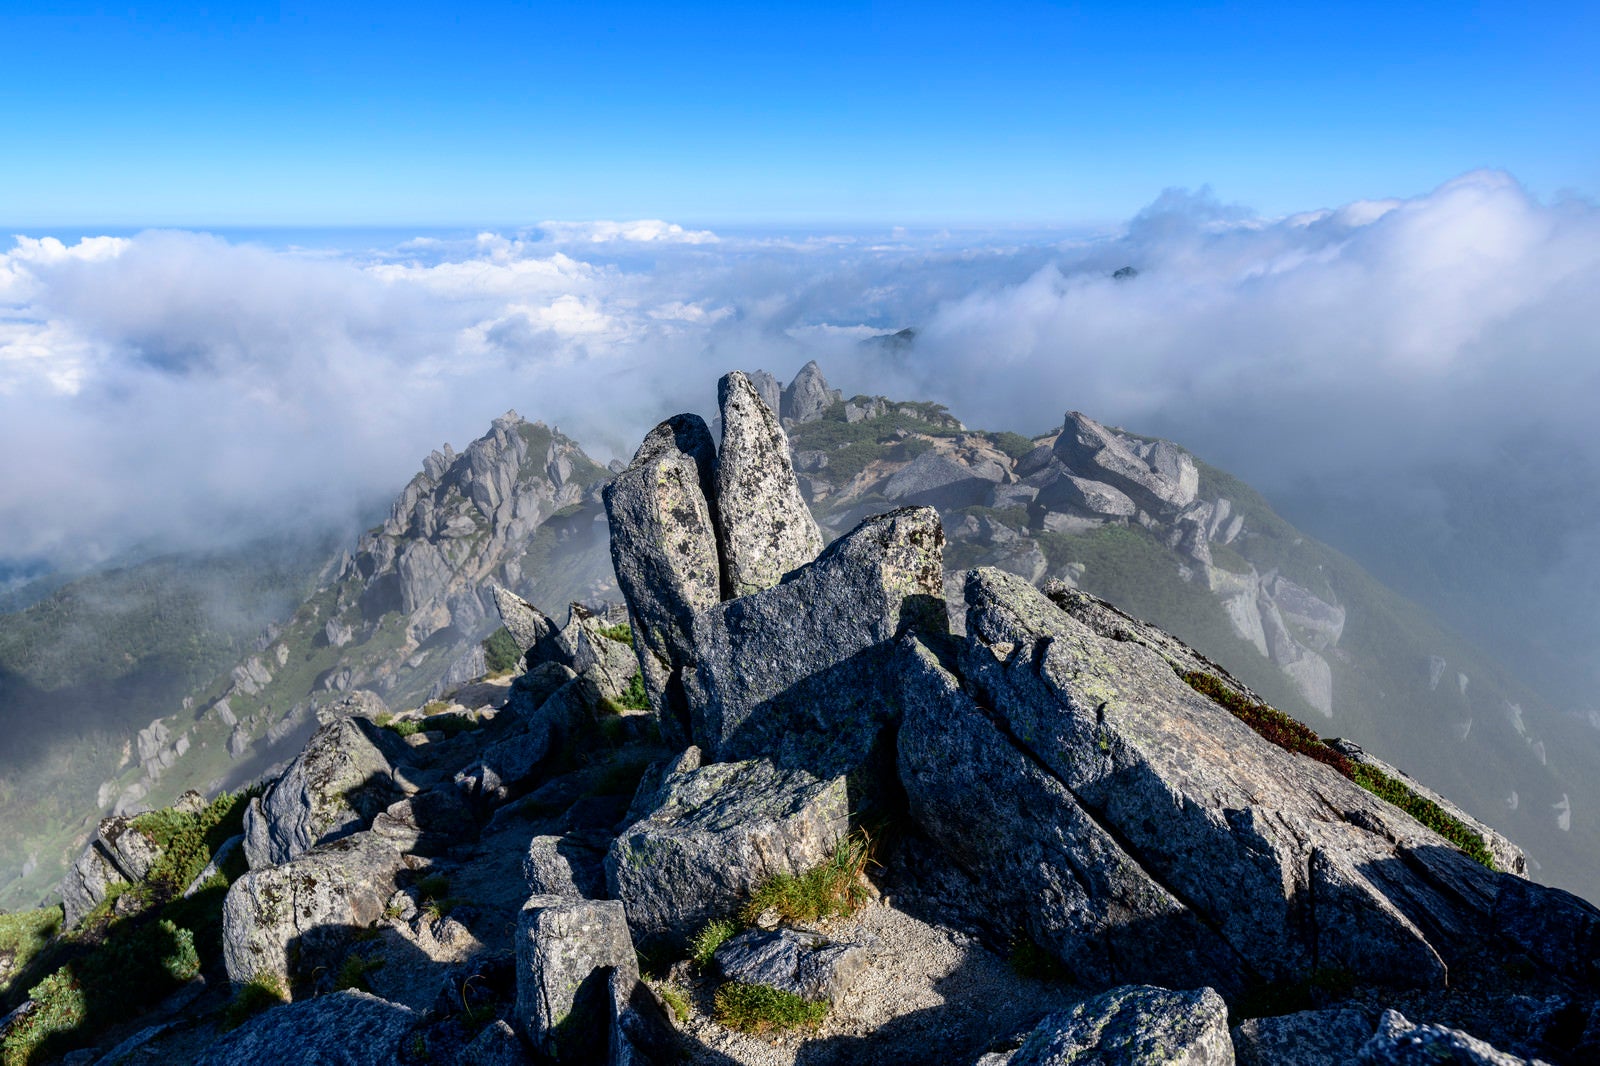 「空木岳山頂から見た稜線と雲海」の写真